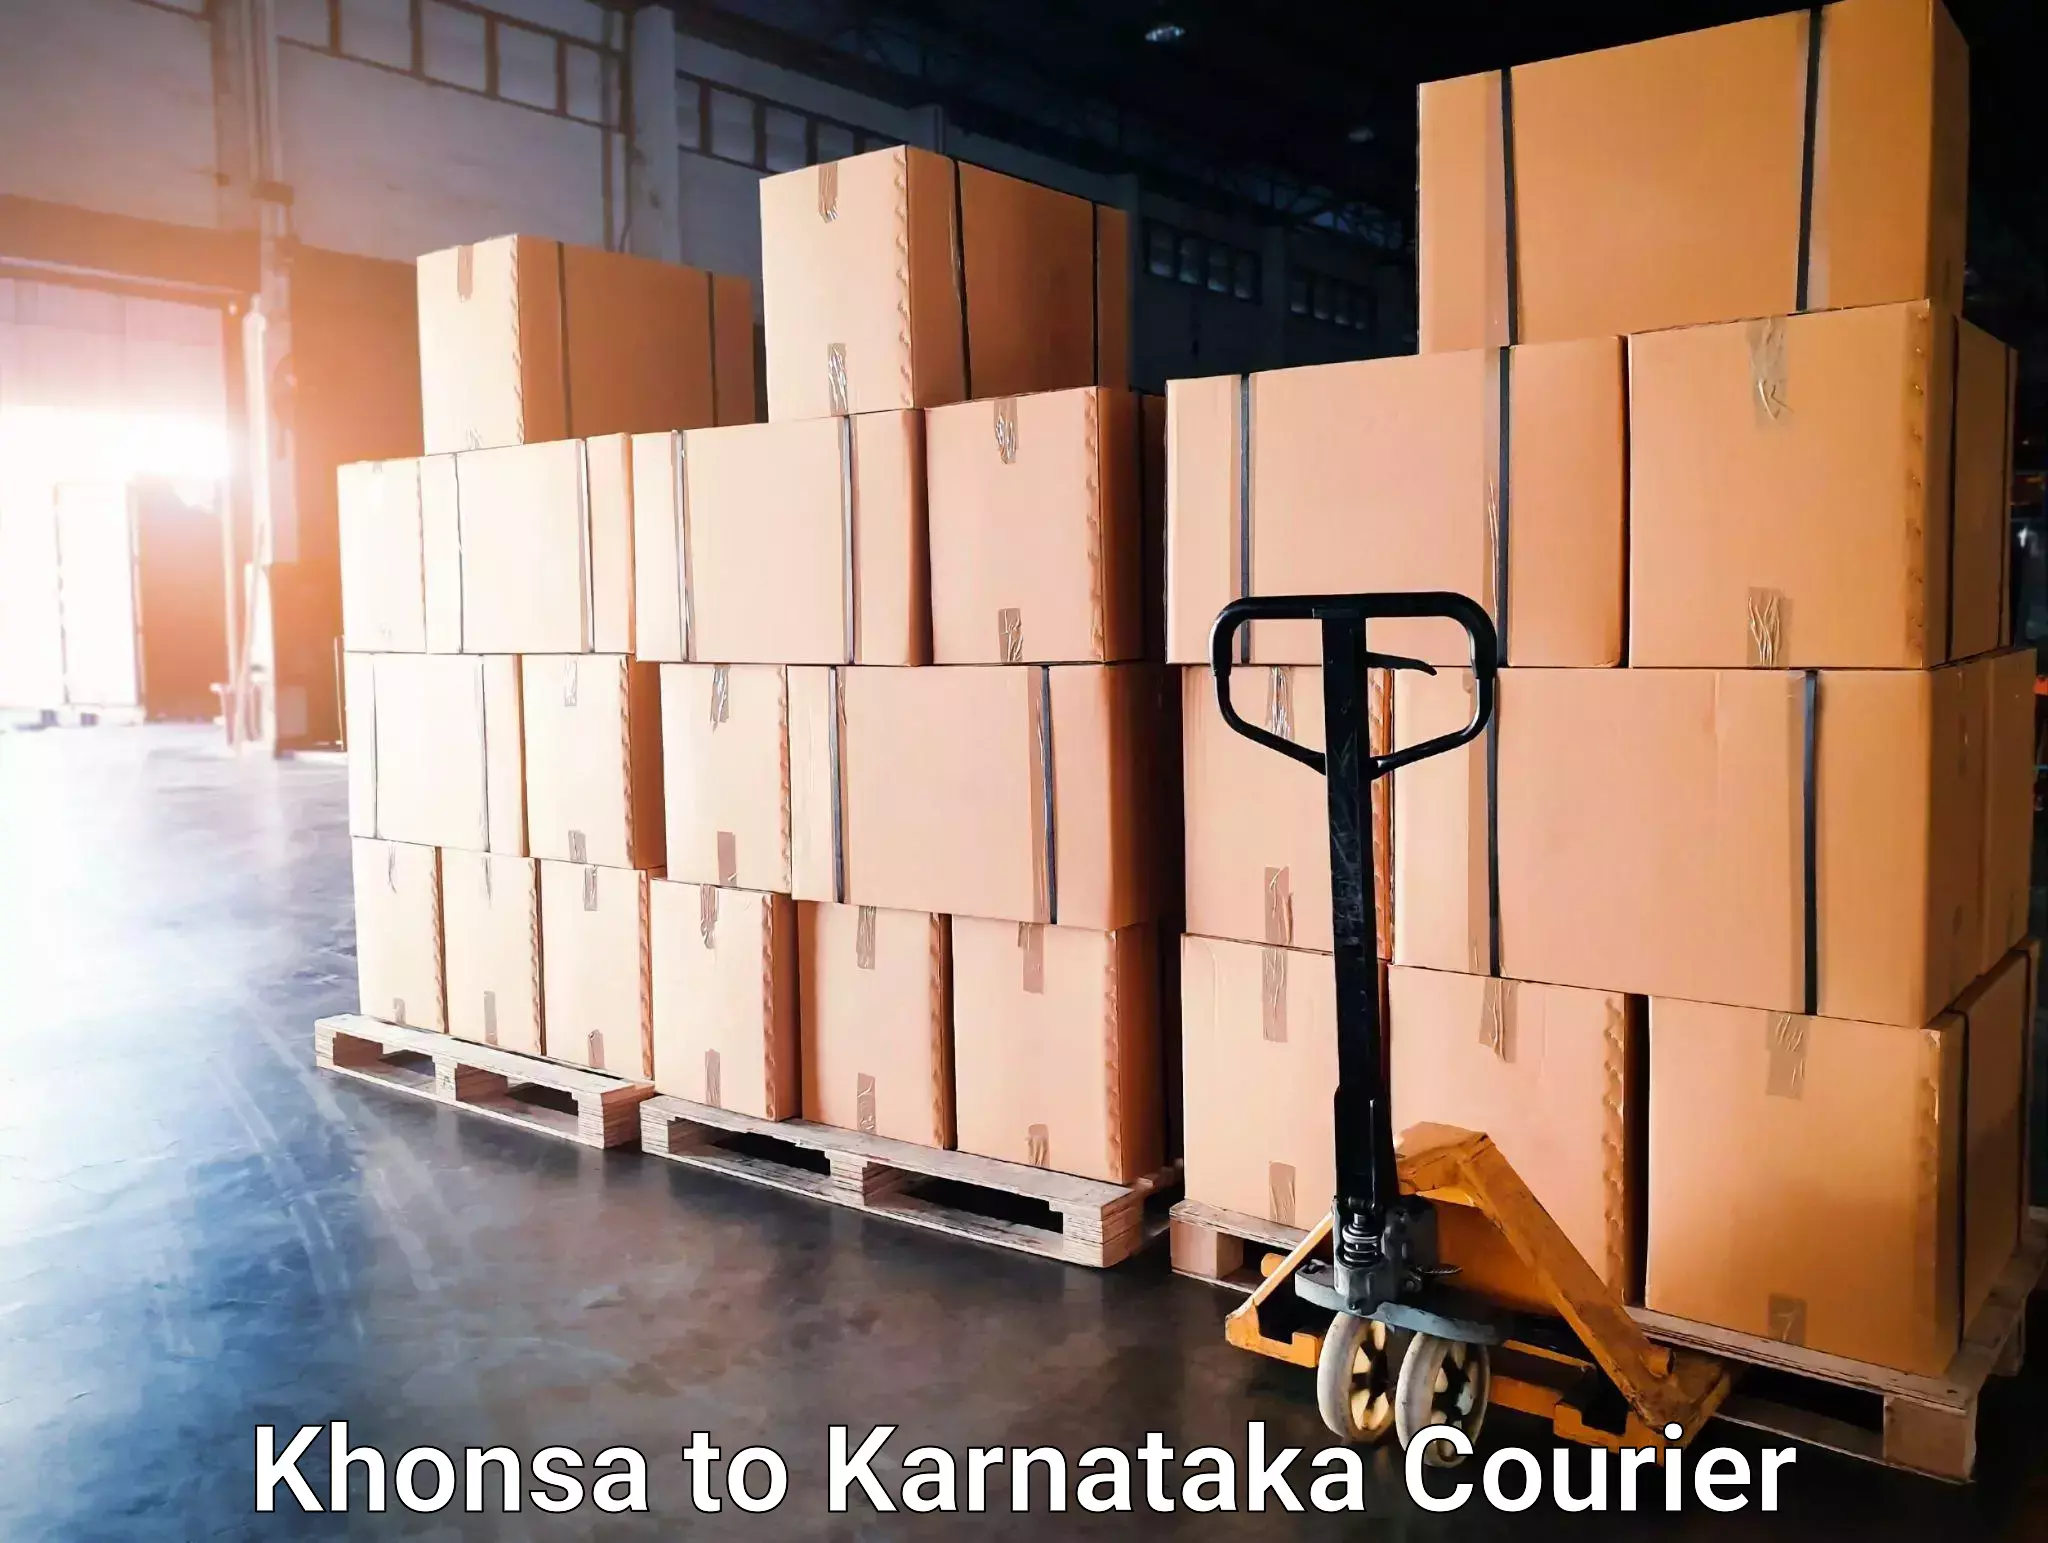 Speedy delivery service Khonsa to Karnataka